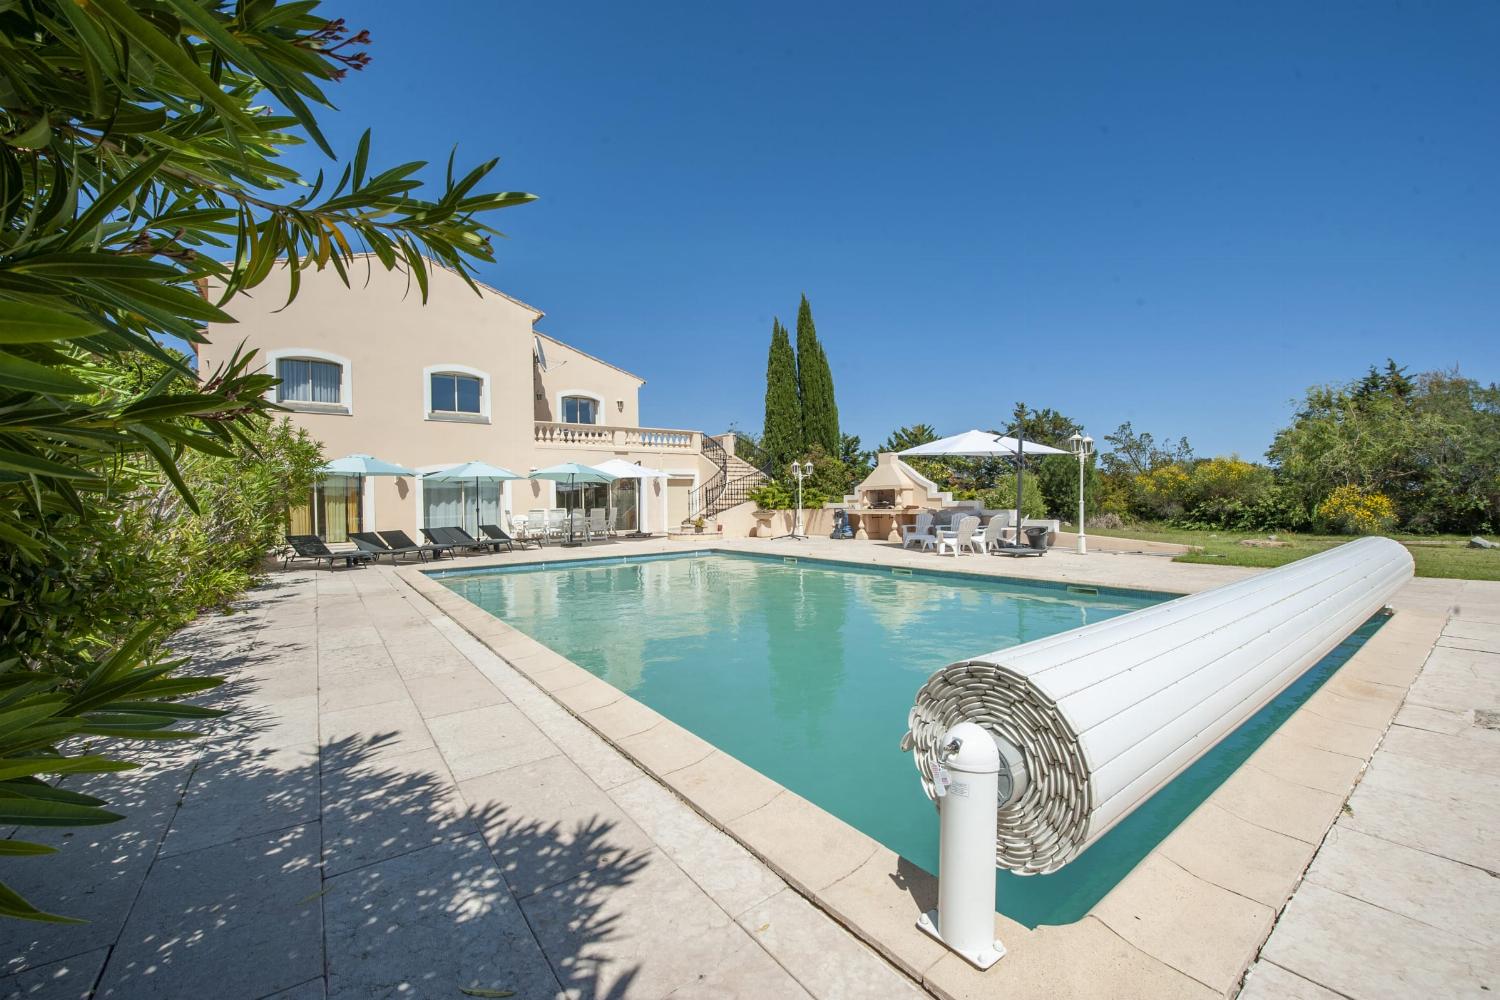 Villa de vacances dans le sud de la France avec piscine privée